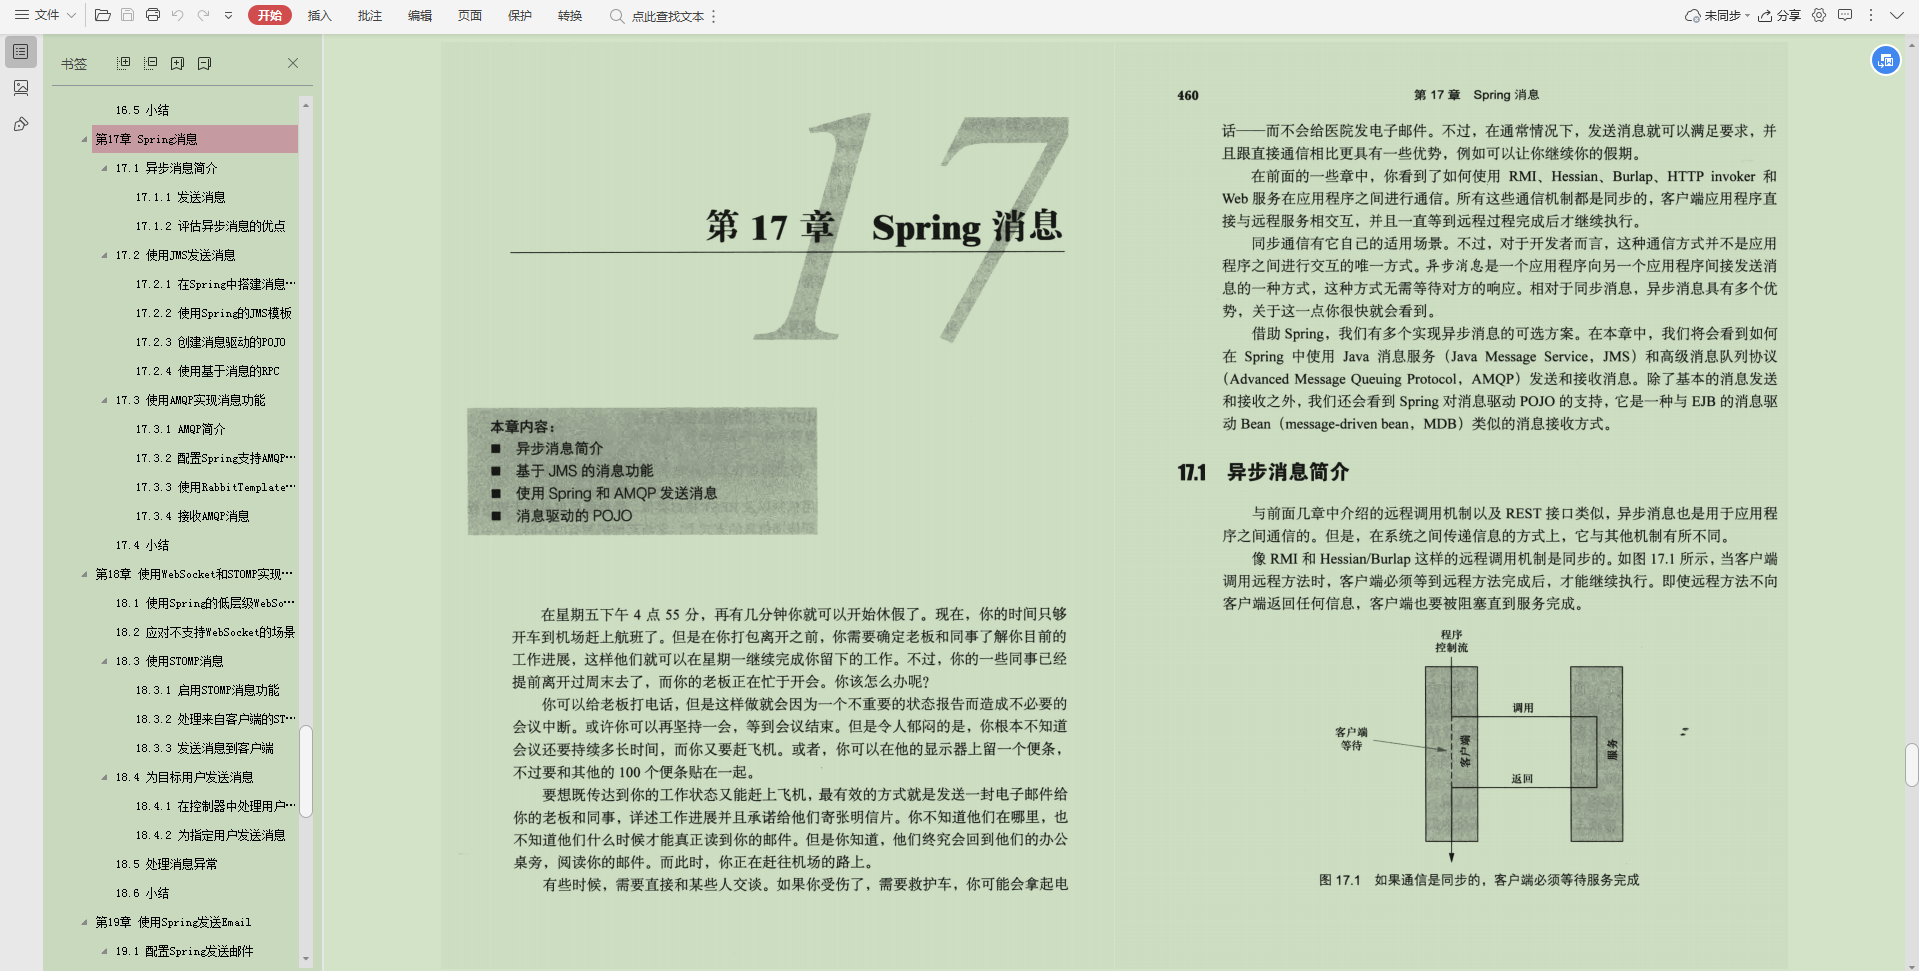 赞啦！Alibaba内网Spring手册太全了，内部资料真香